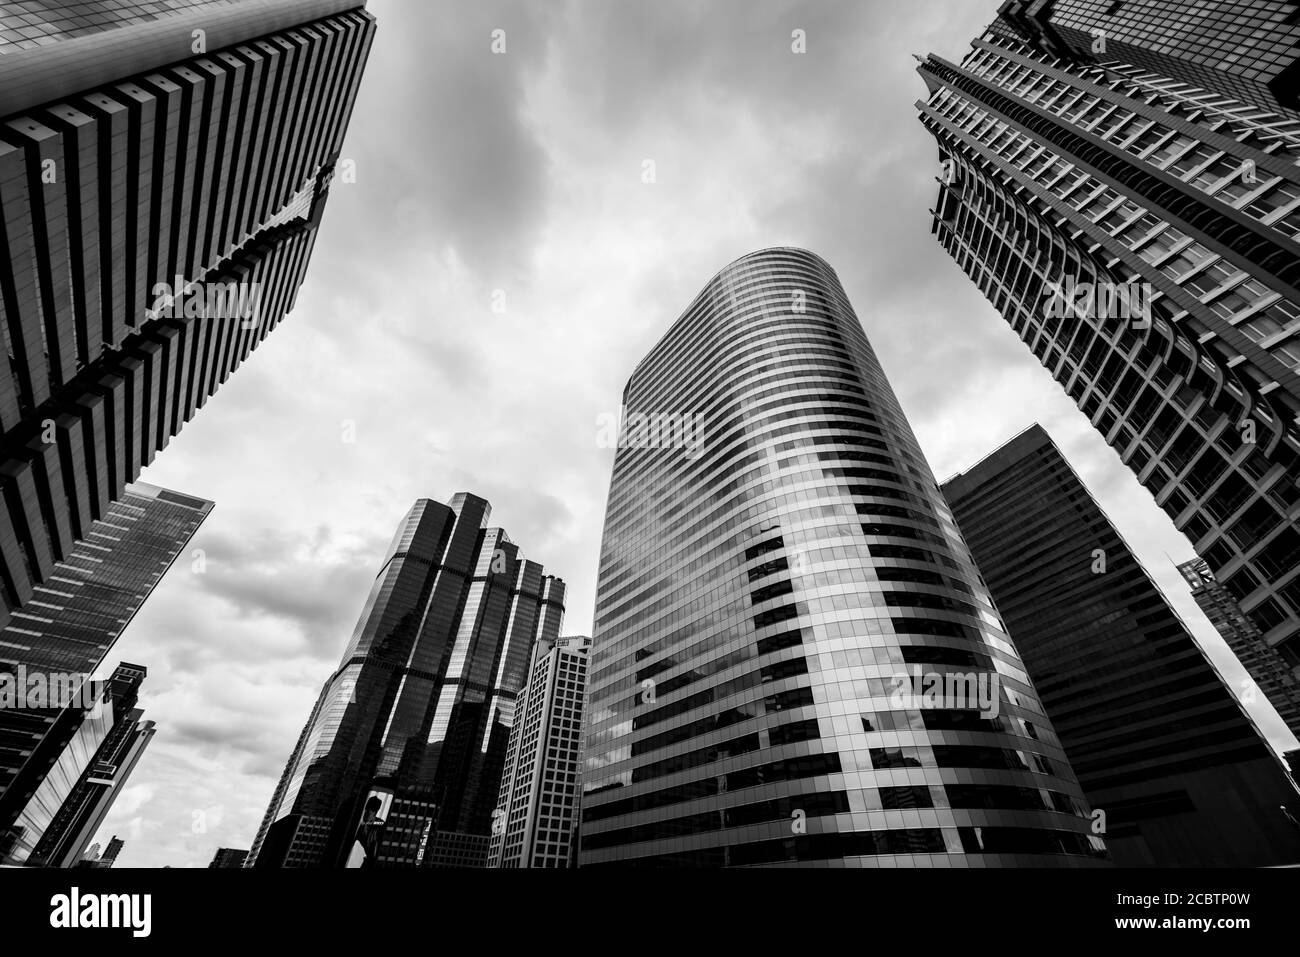 Vue de dessous des gratte-ciels d'affaires modernes. Concepts bancaires, financiers, économiques, futurs. Noir et blanc monochrome. Banque D'Images